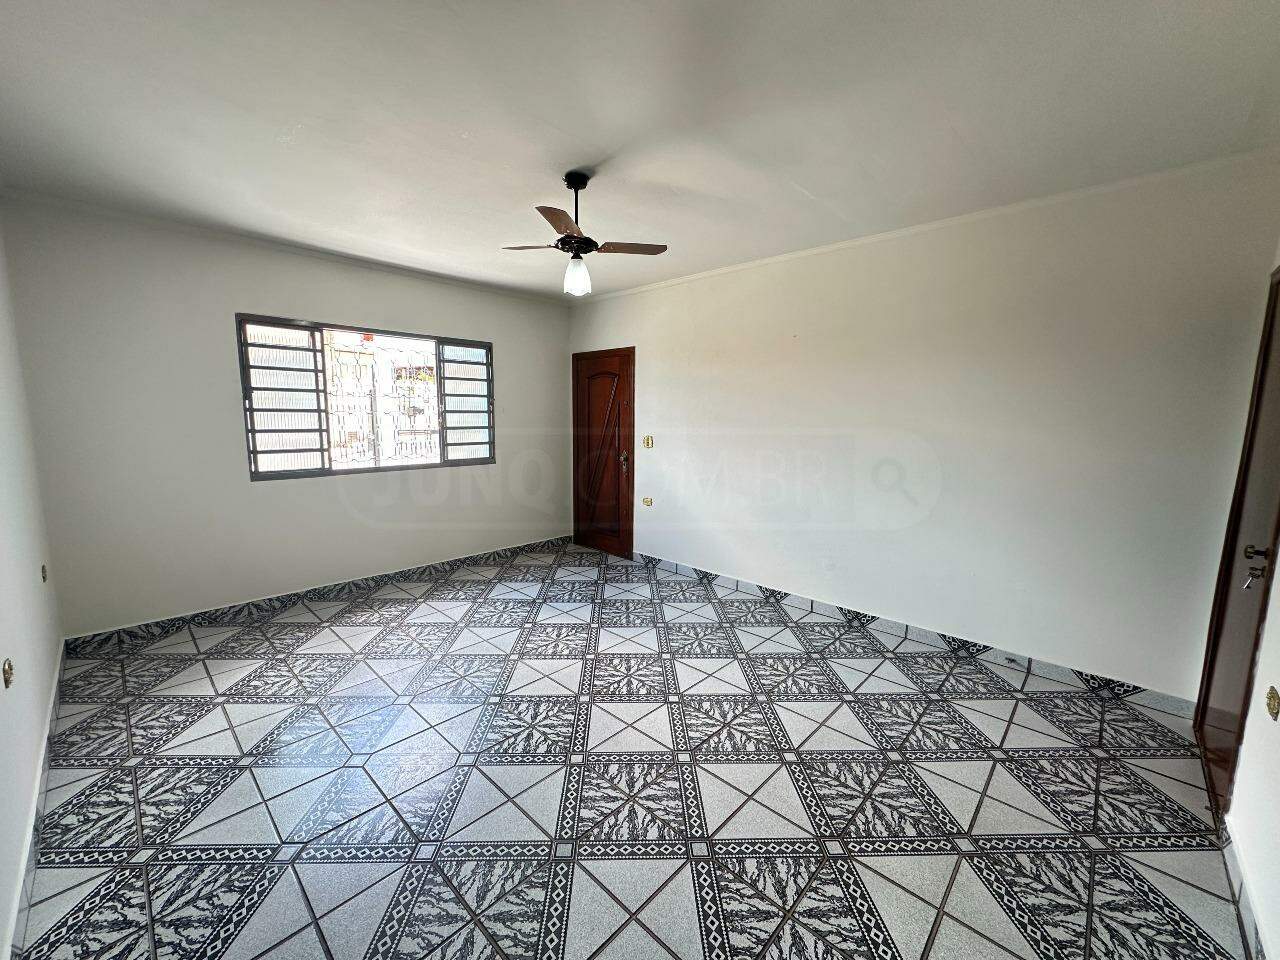 Casa para alugar, 3 quartos, sendo 1 suíte, 6 vagas, no bairro Jaraguá em Piracicaba - SP